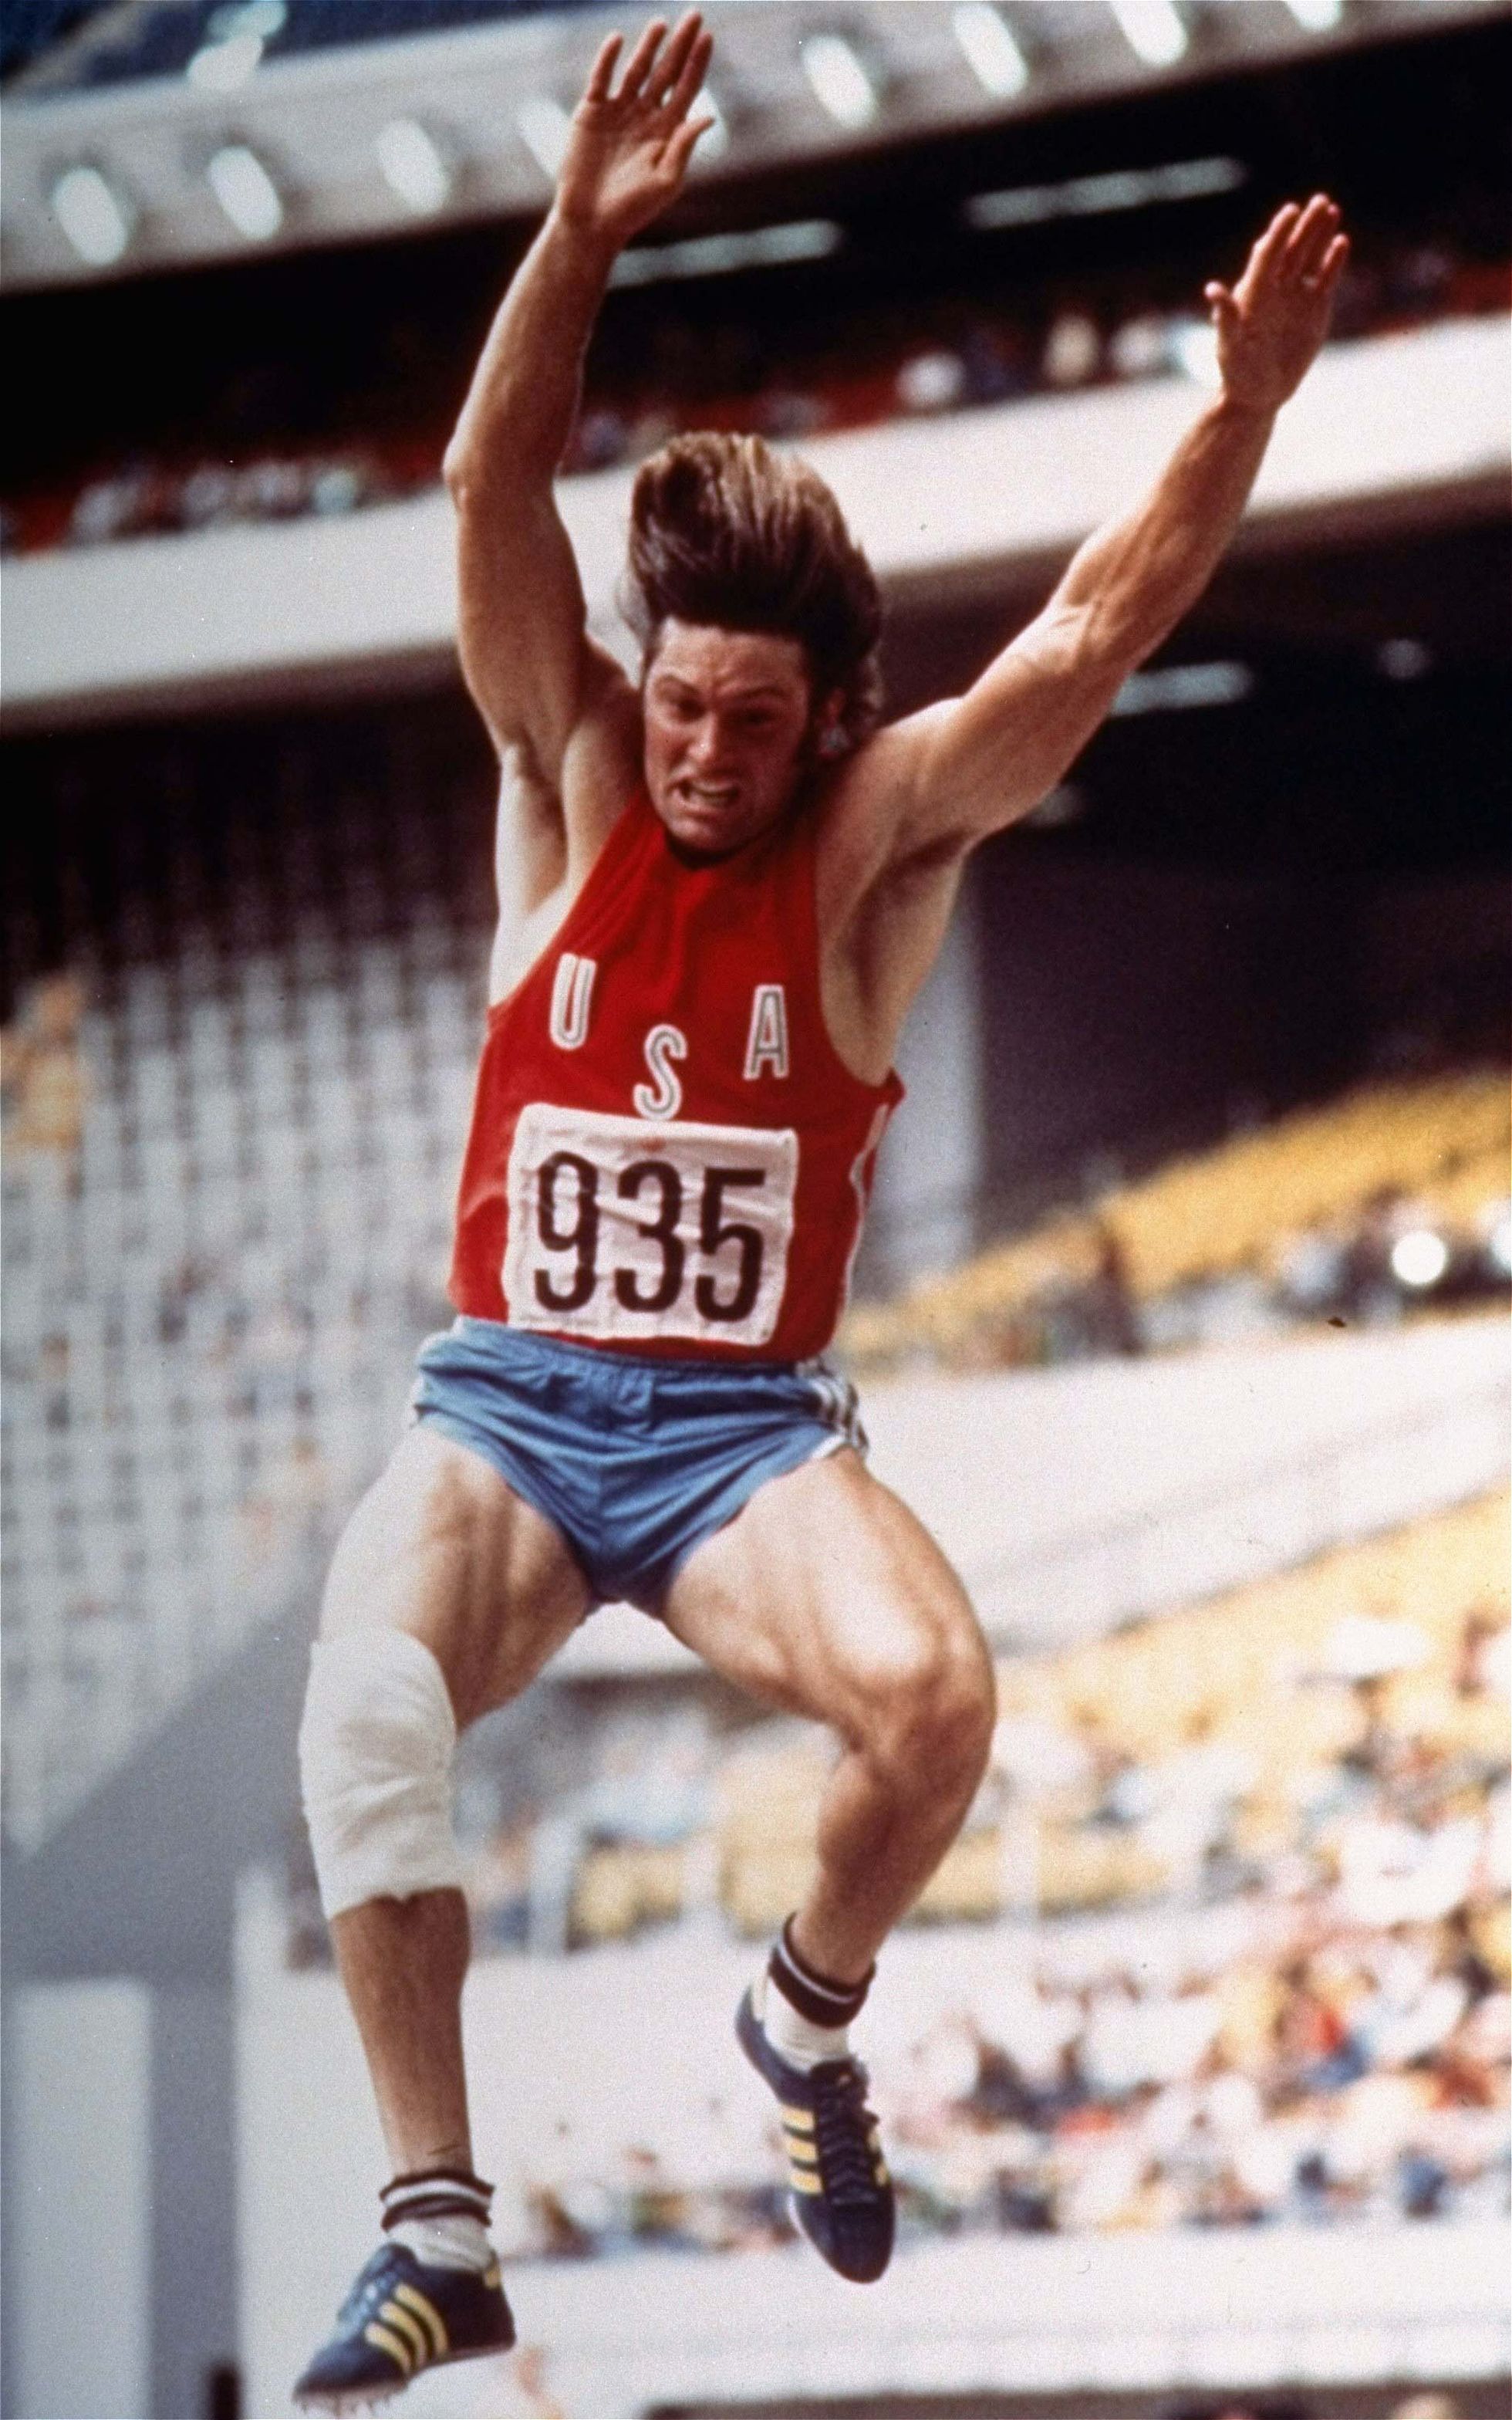 1976. gada vasaras olimpiskās spēles Monreālā, Kanādā. Fotogrāfijā iemūžināts Dženera lēciens kādā no desmitcīņas disciplīnām. 